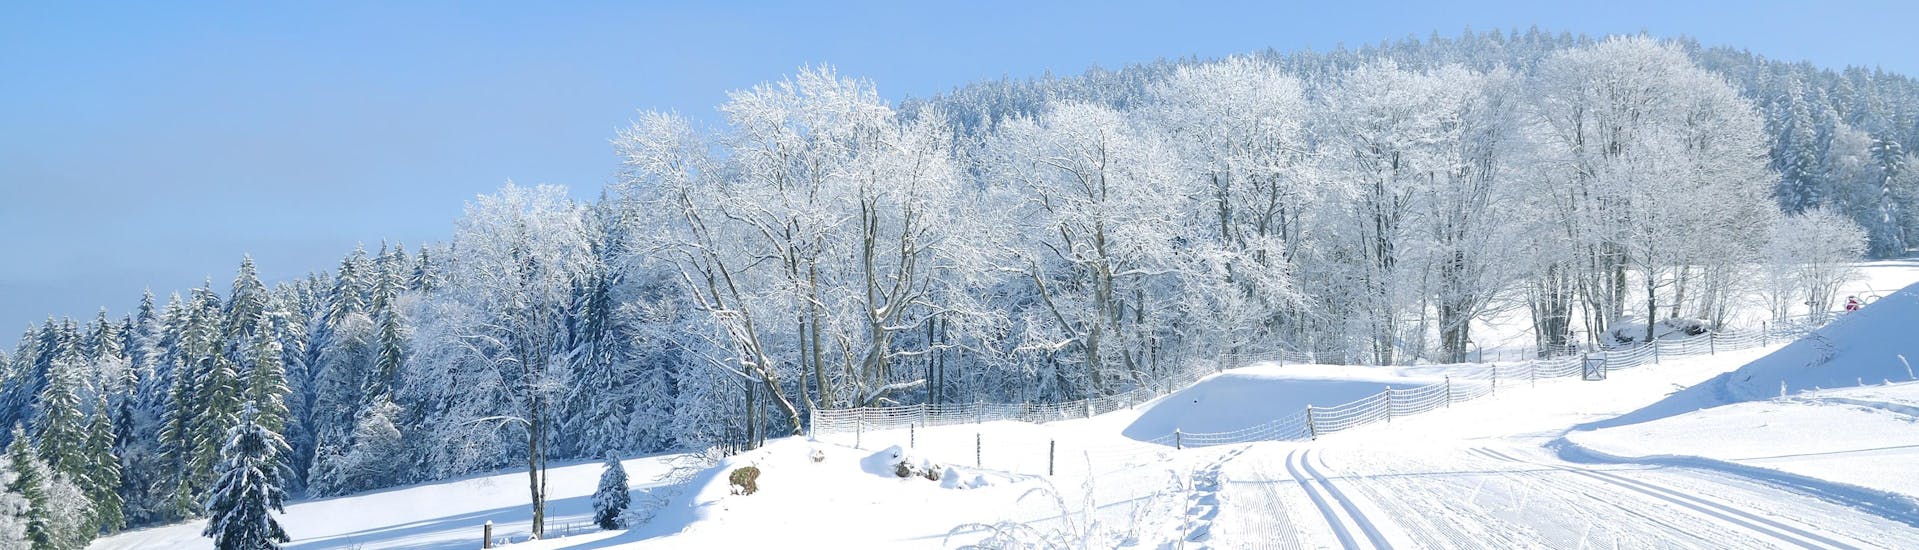 Immagine delle piste da sci della Foresta Bavarese dove è possibile prenotare lezioni di sci.